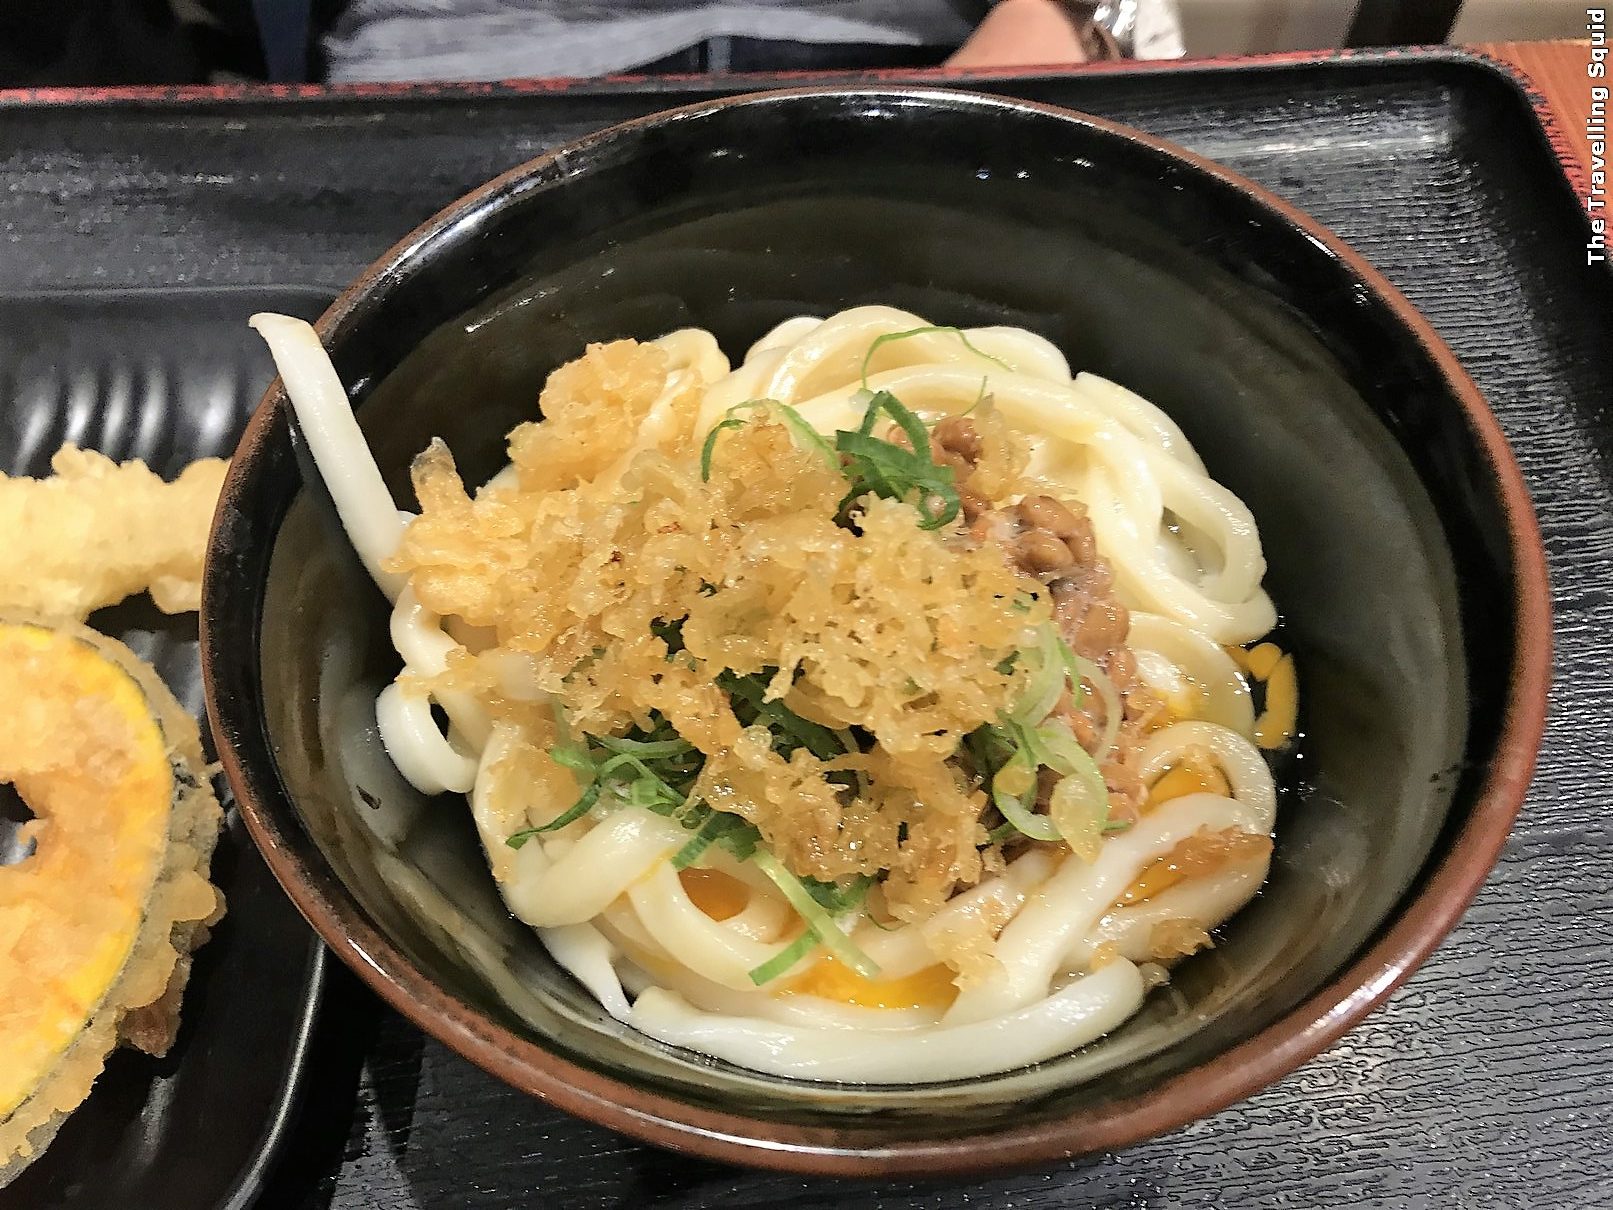 Tokyo Mentsudan for tasty udon in Shinjuku